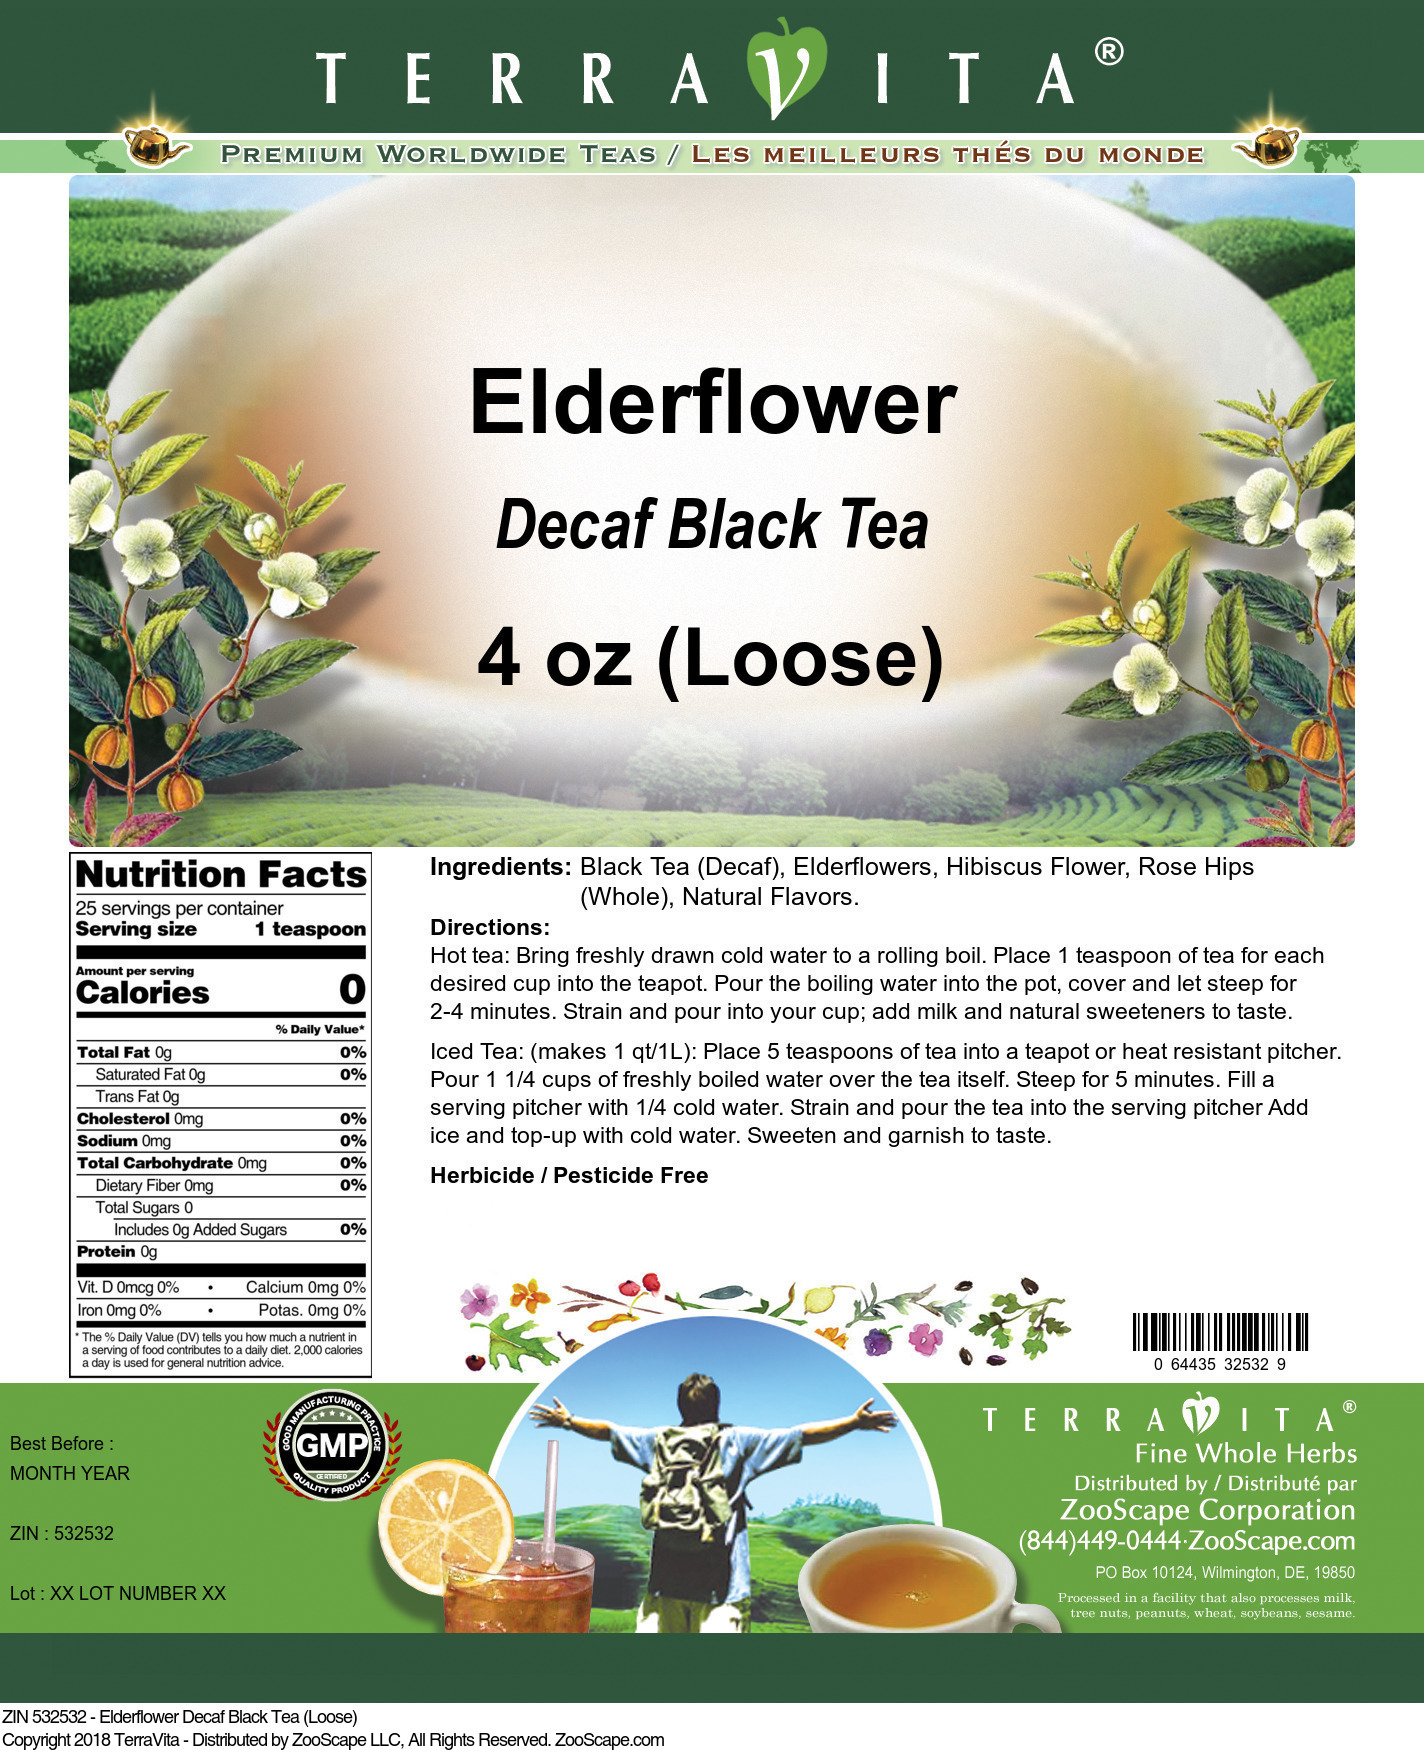 Elderflower Decaf Black Tea (Loose) - Label